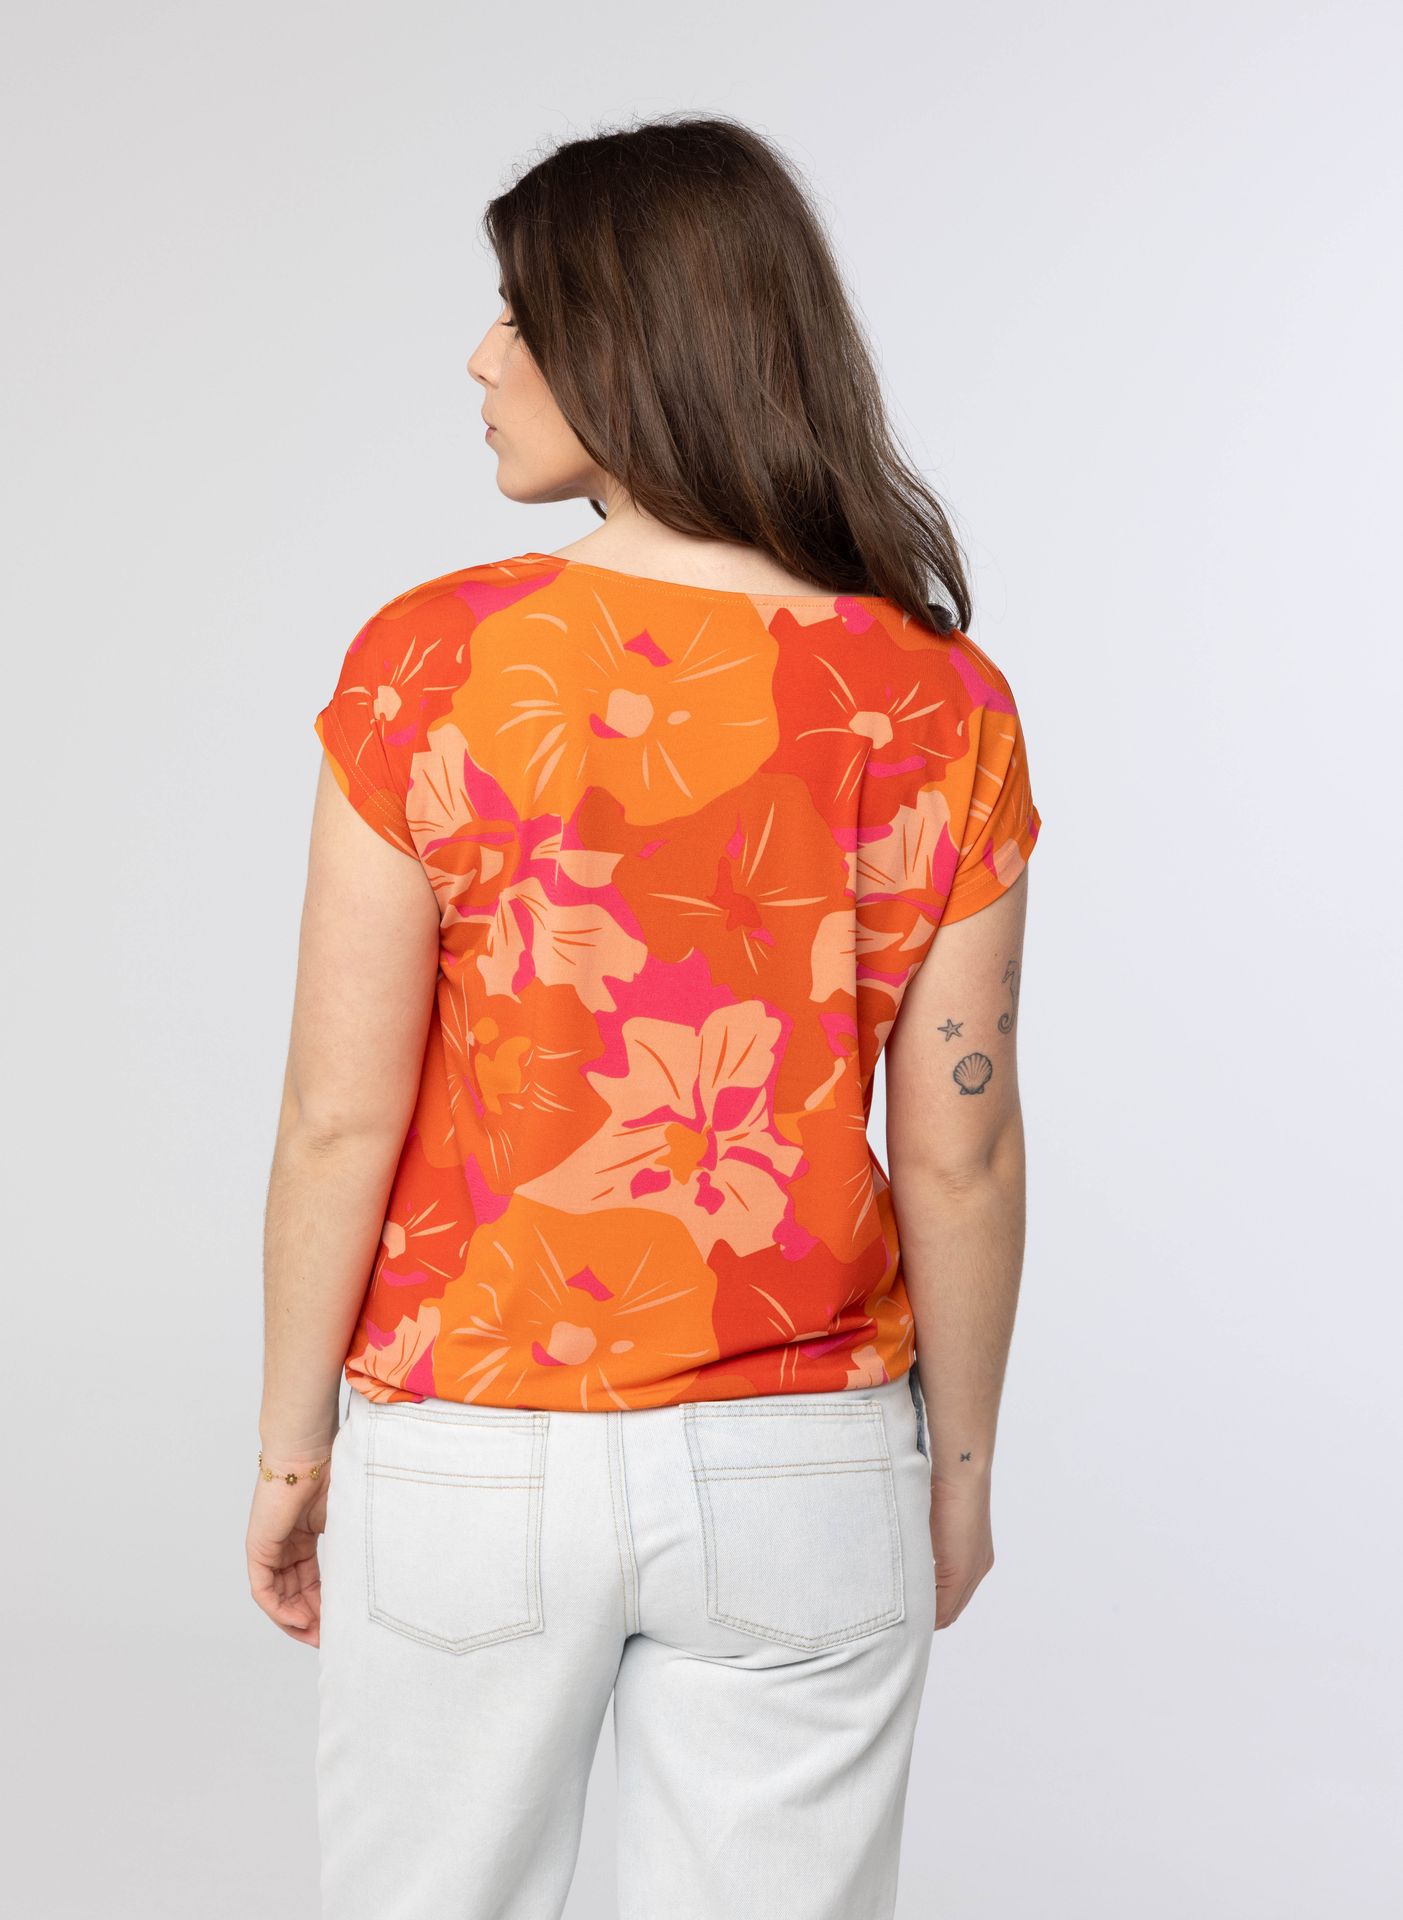 Norah Oranje shirt orange/pink 213616-739